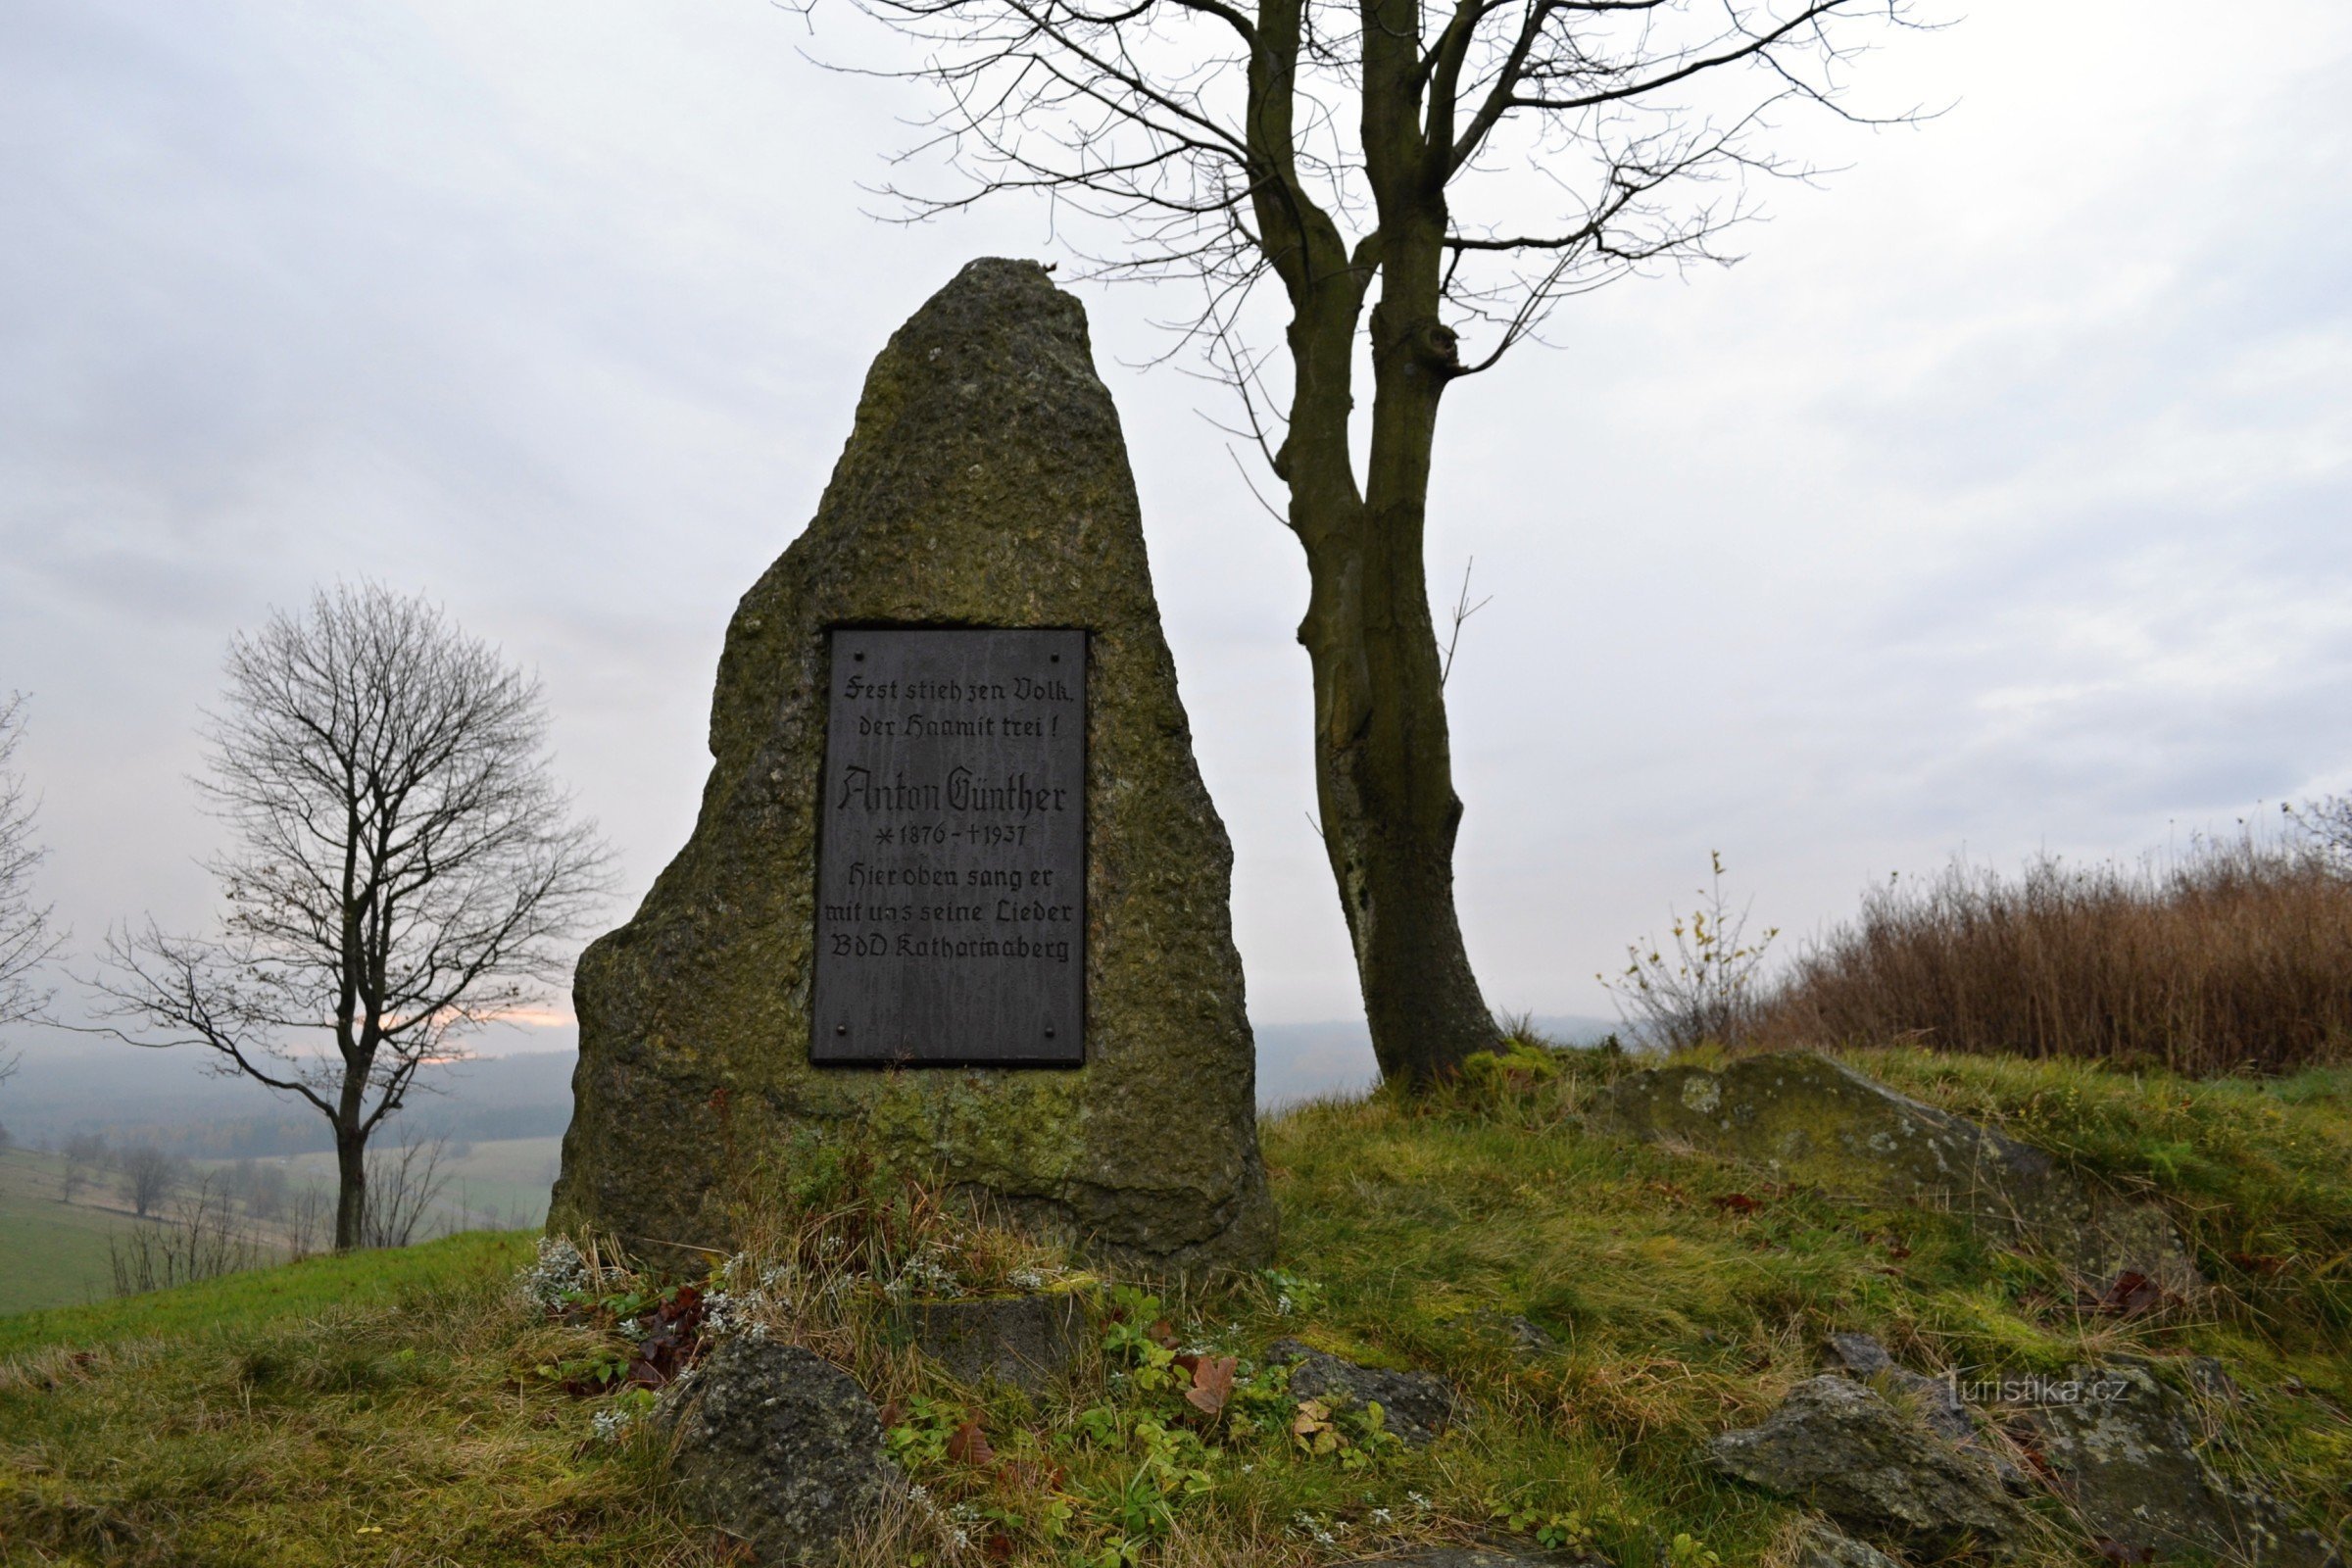 Monument to Anton Günter